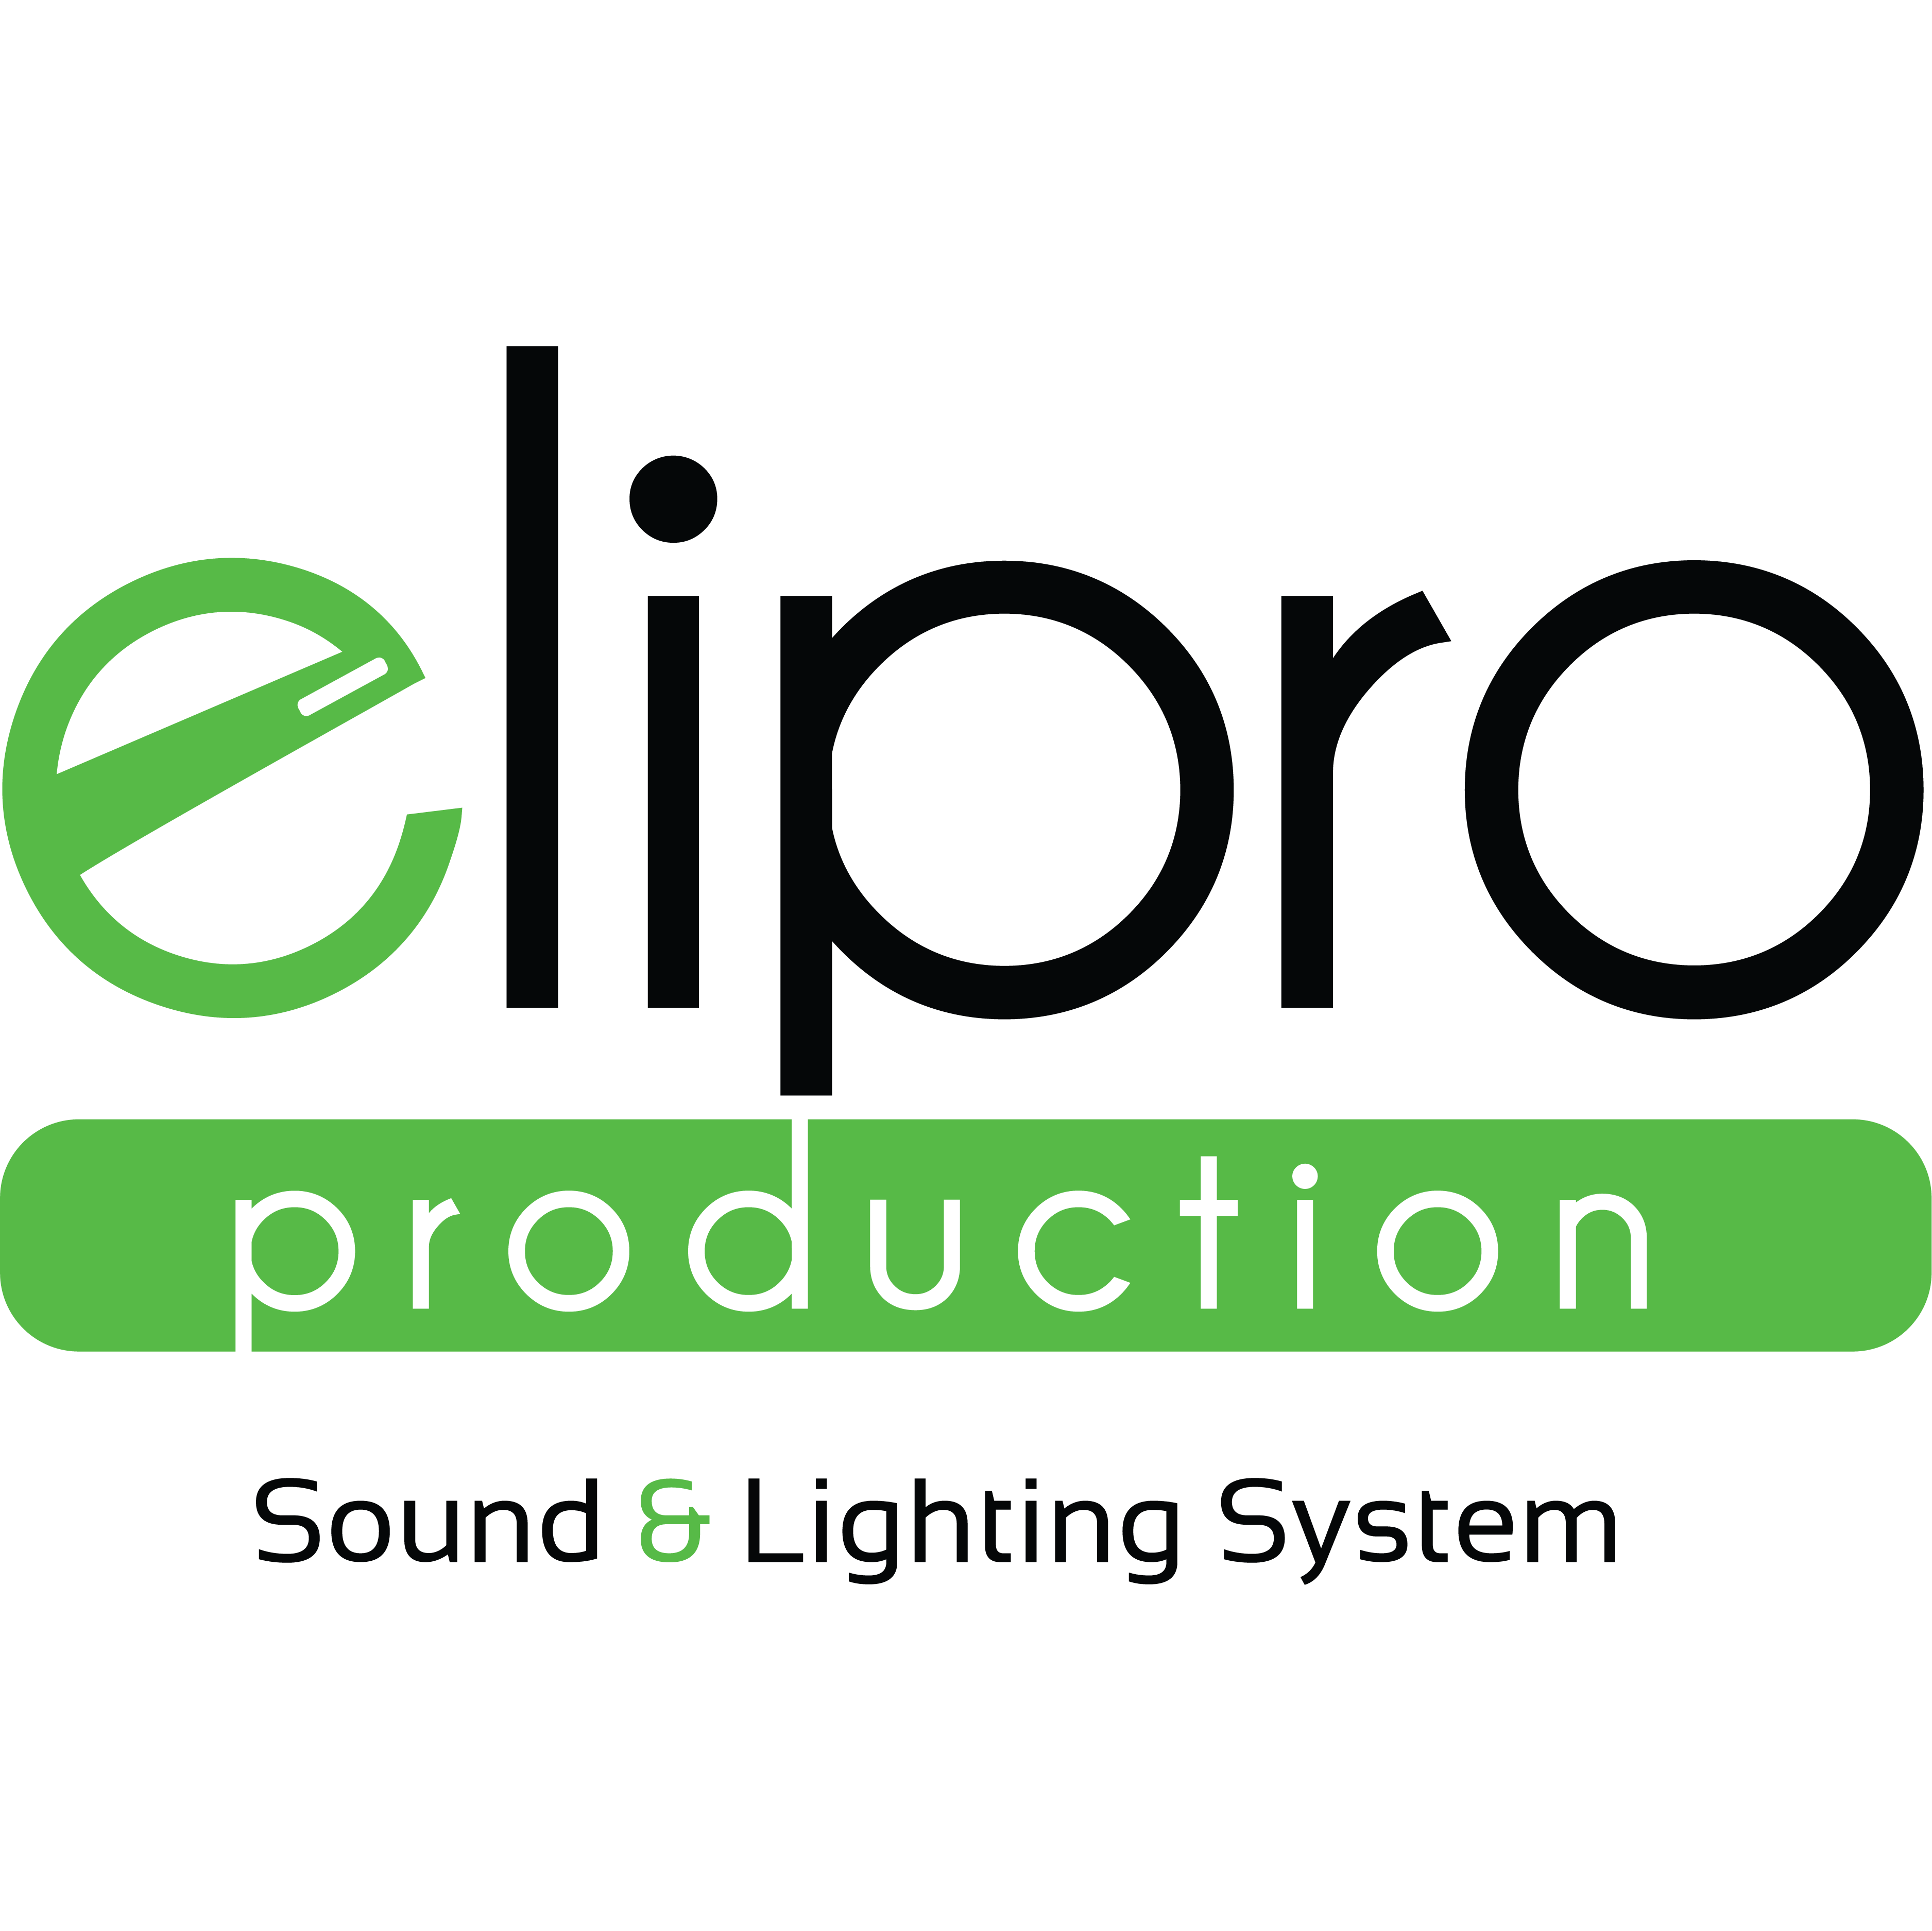 elipro Production